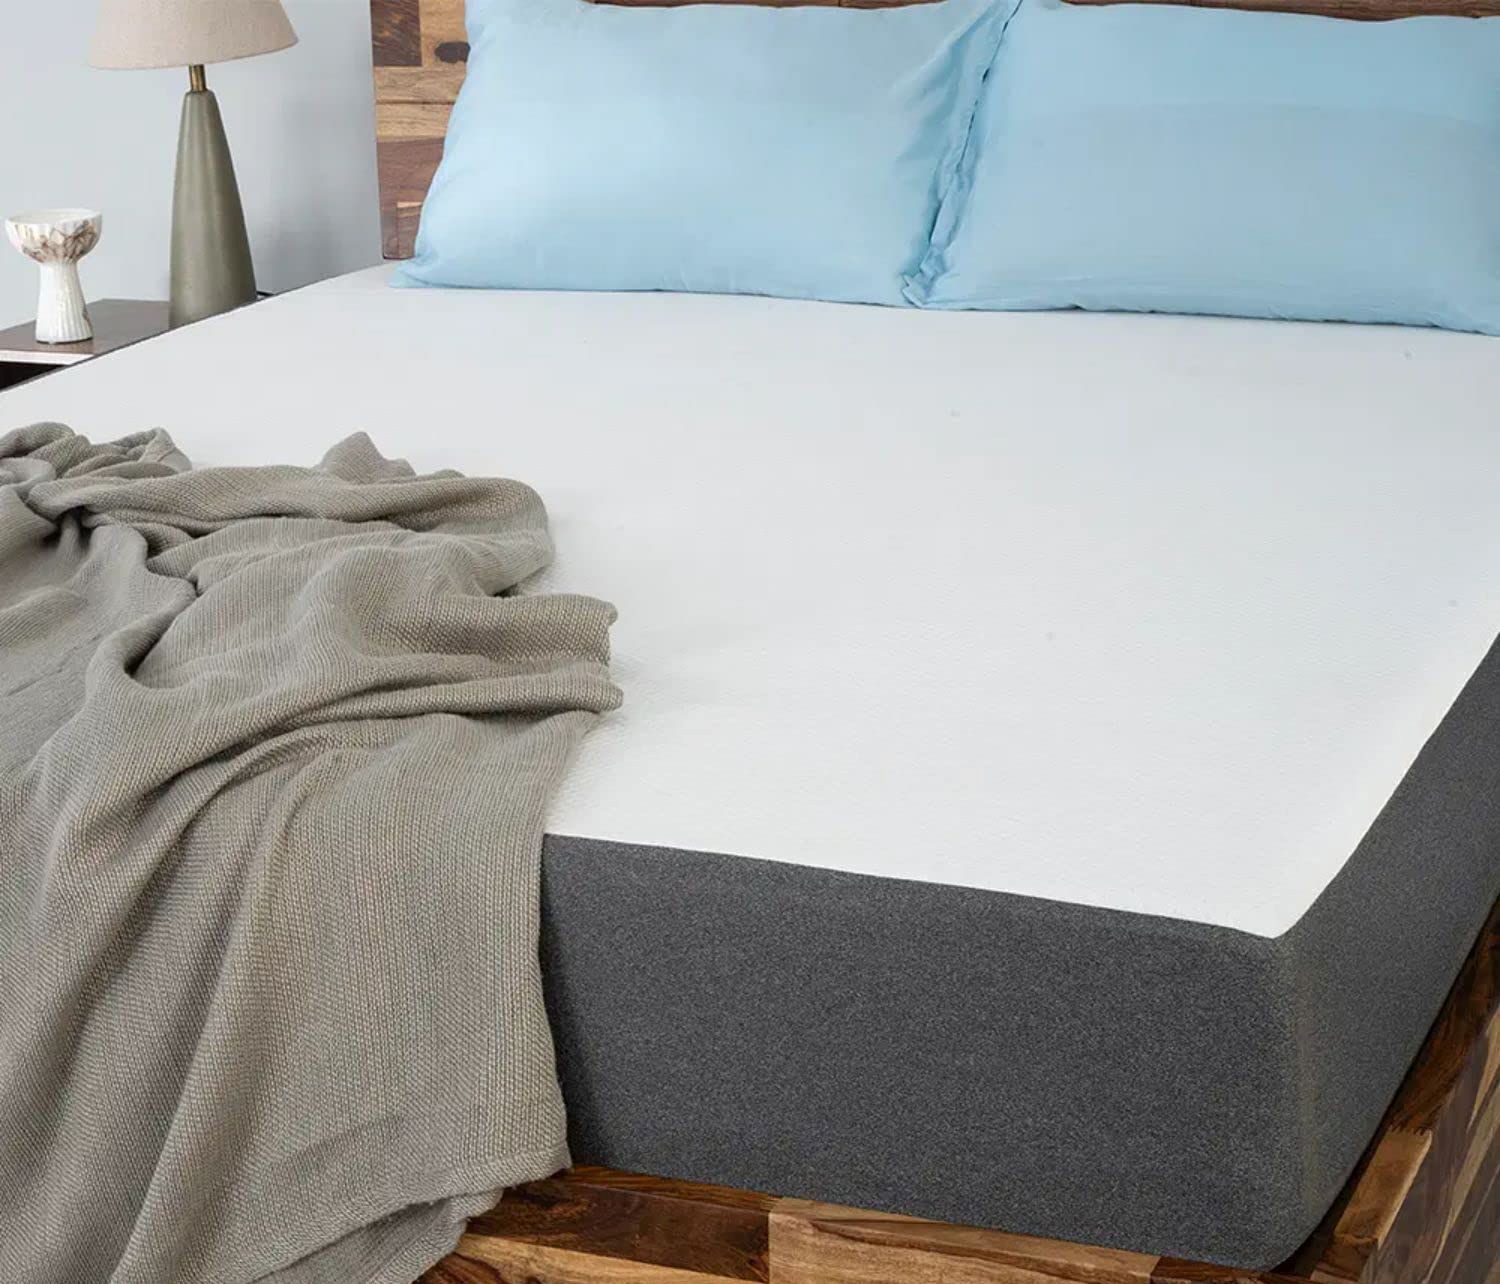 Wakefit 10-inch Medium Firm mattress